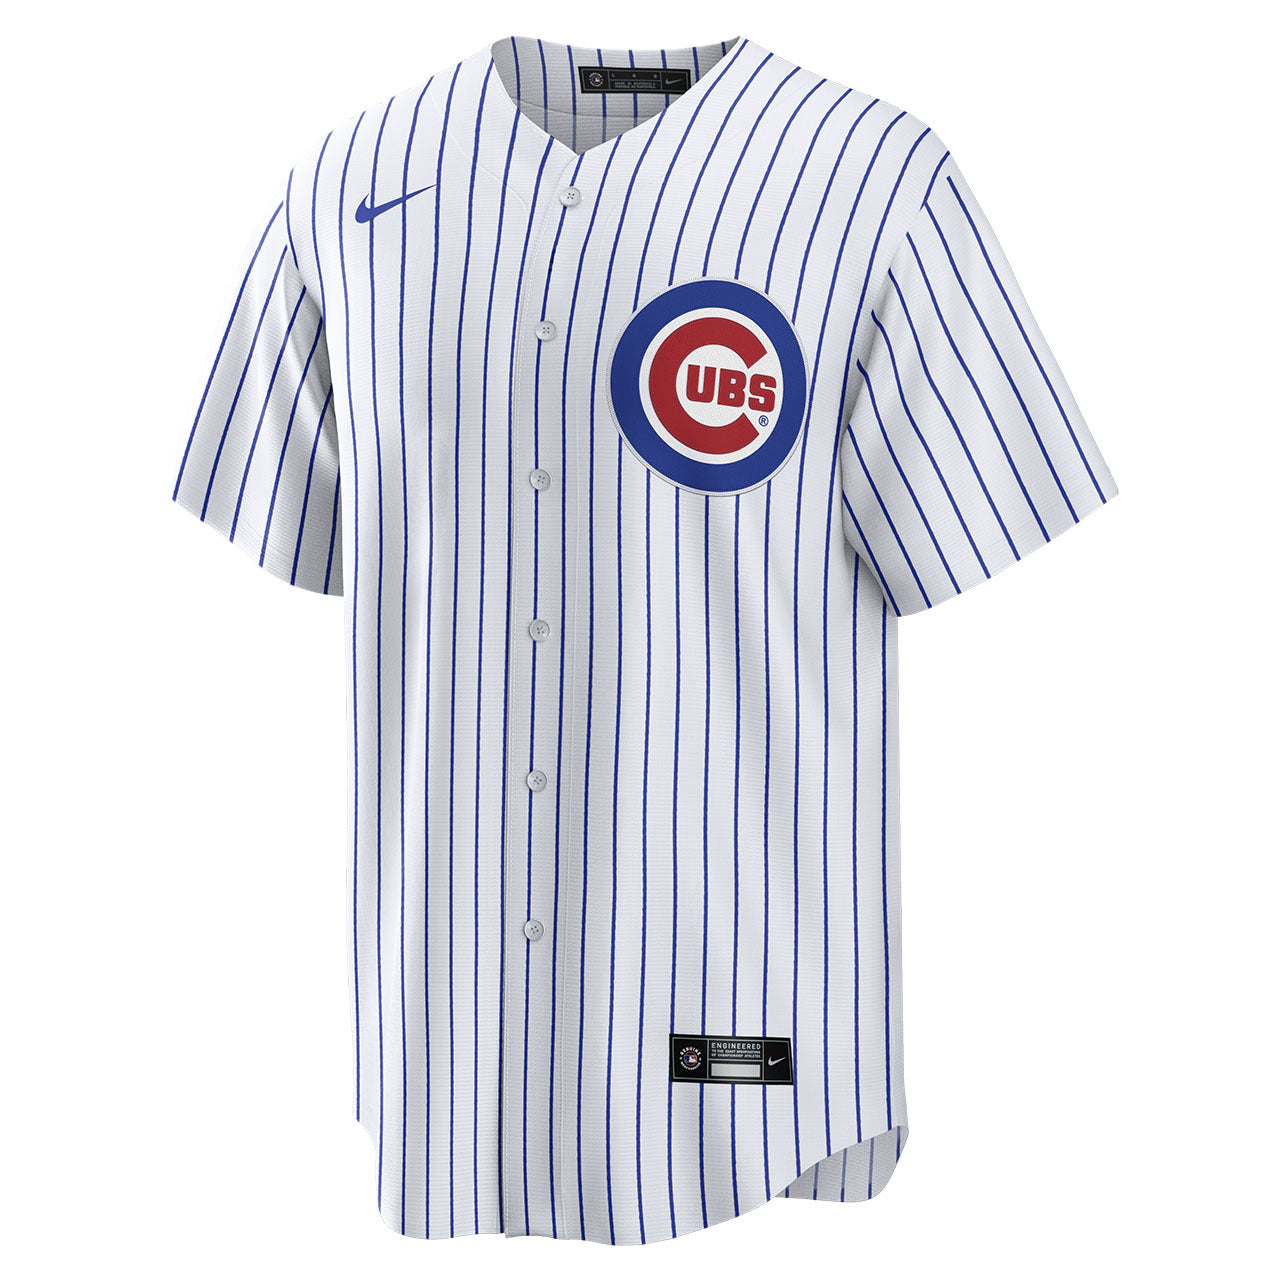 Men's Seiya Suzuki Chicago Cubs NIKE White Home Replica Jersey